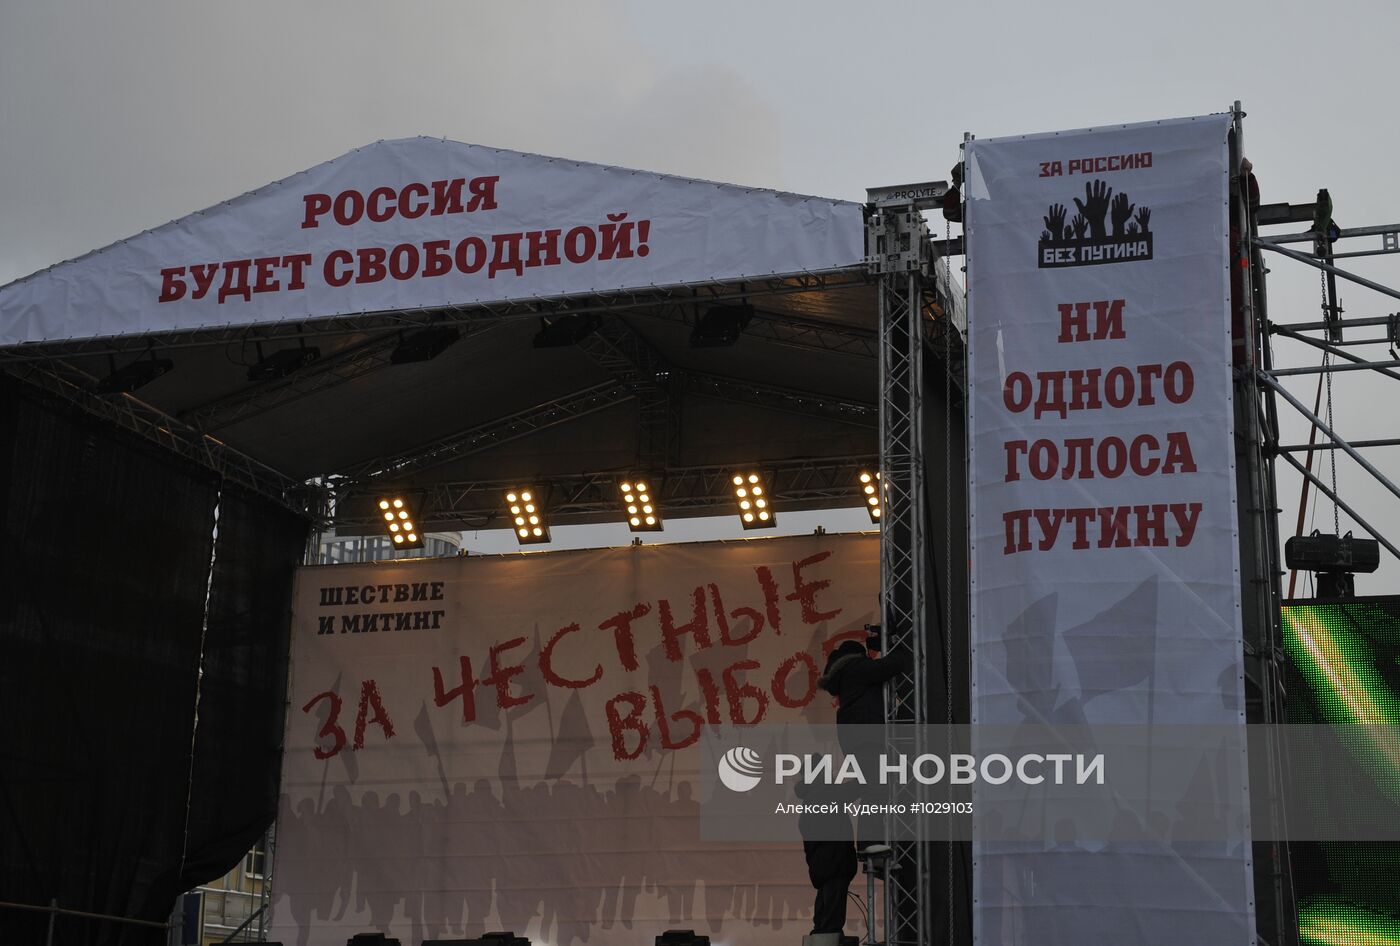 Подготовка к митингу "За честные выборы" на Болотной площади